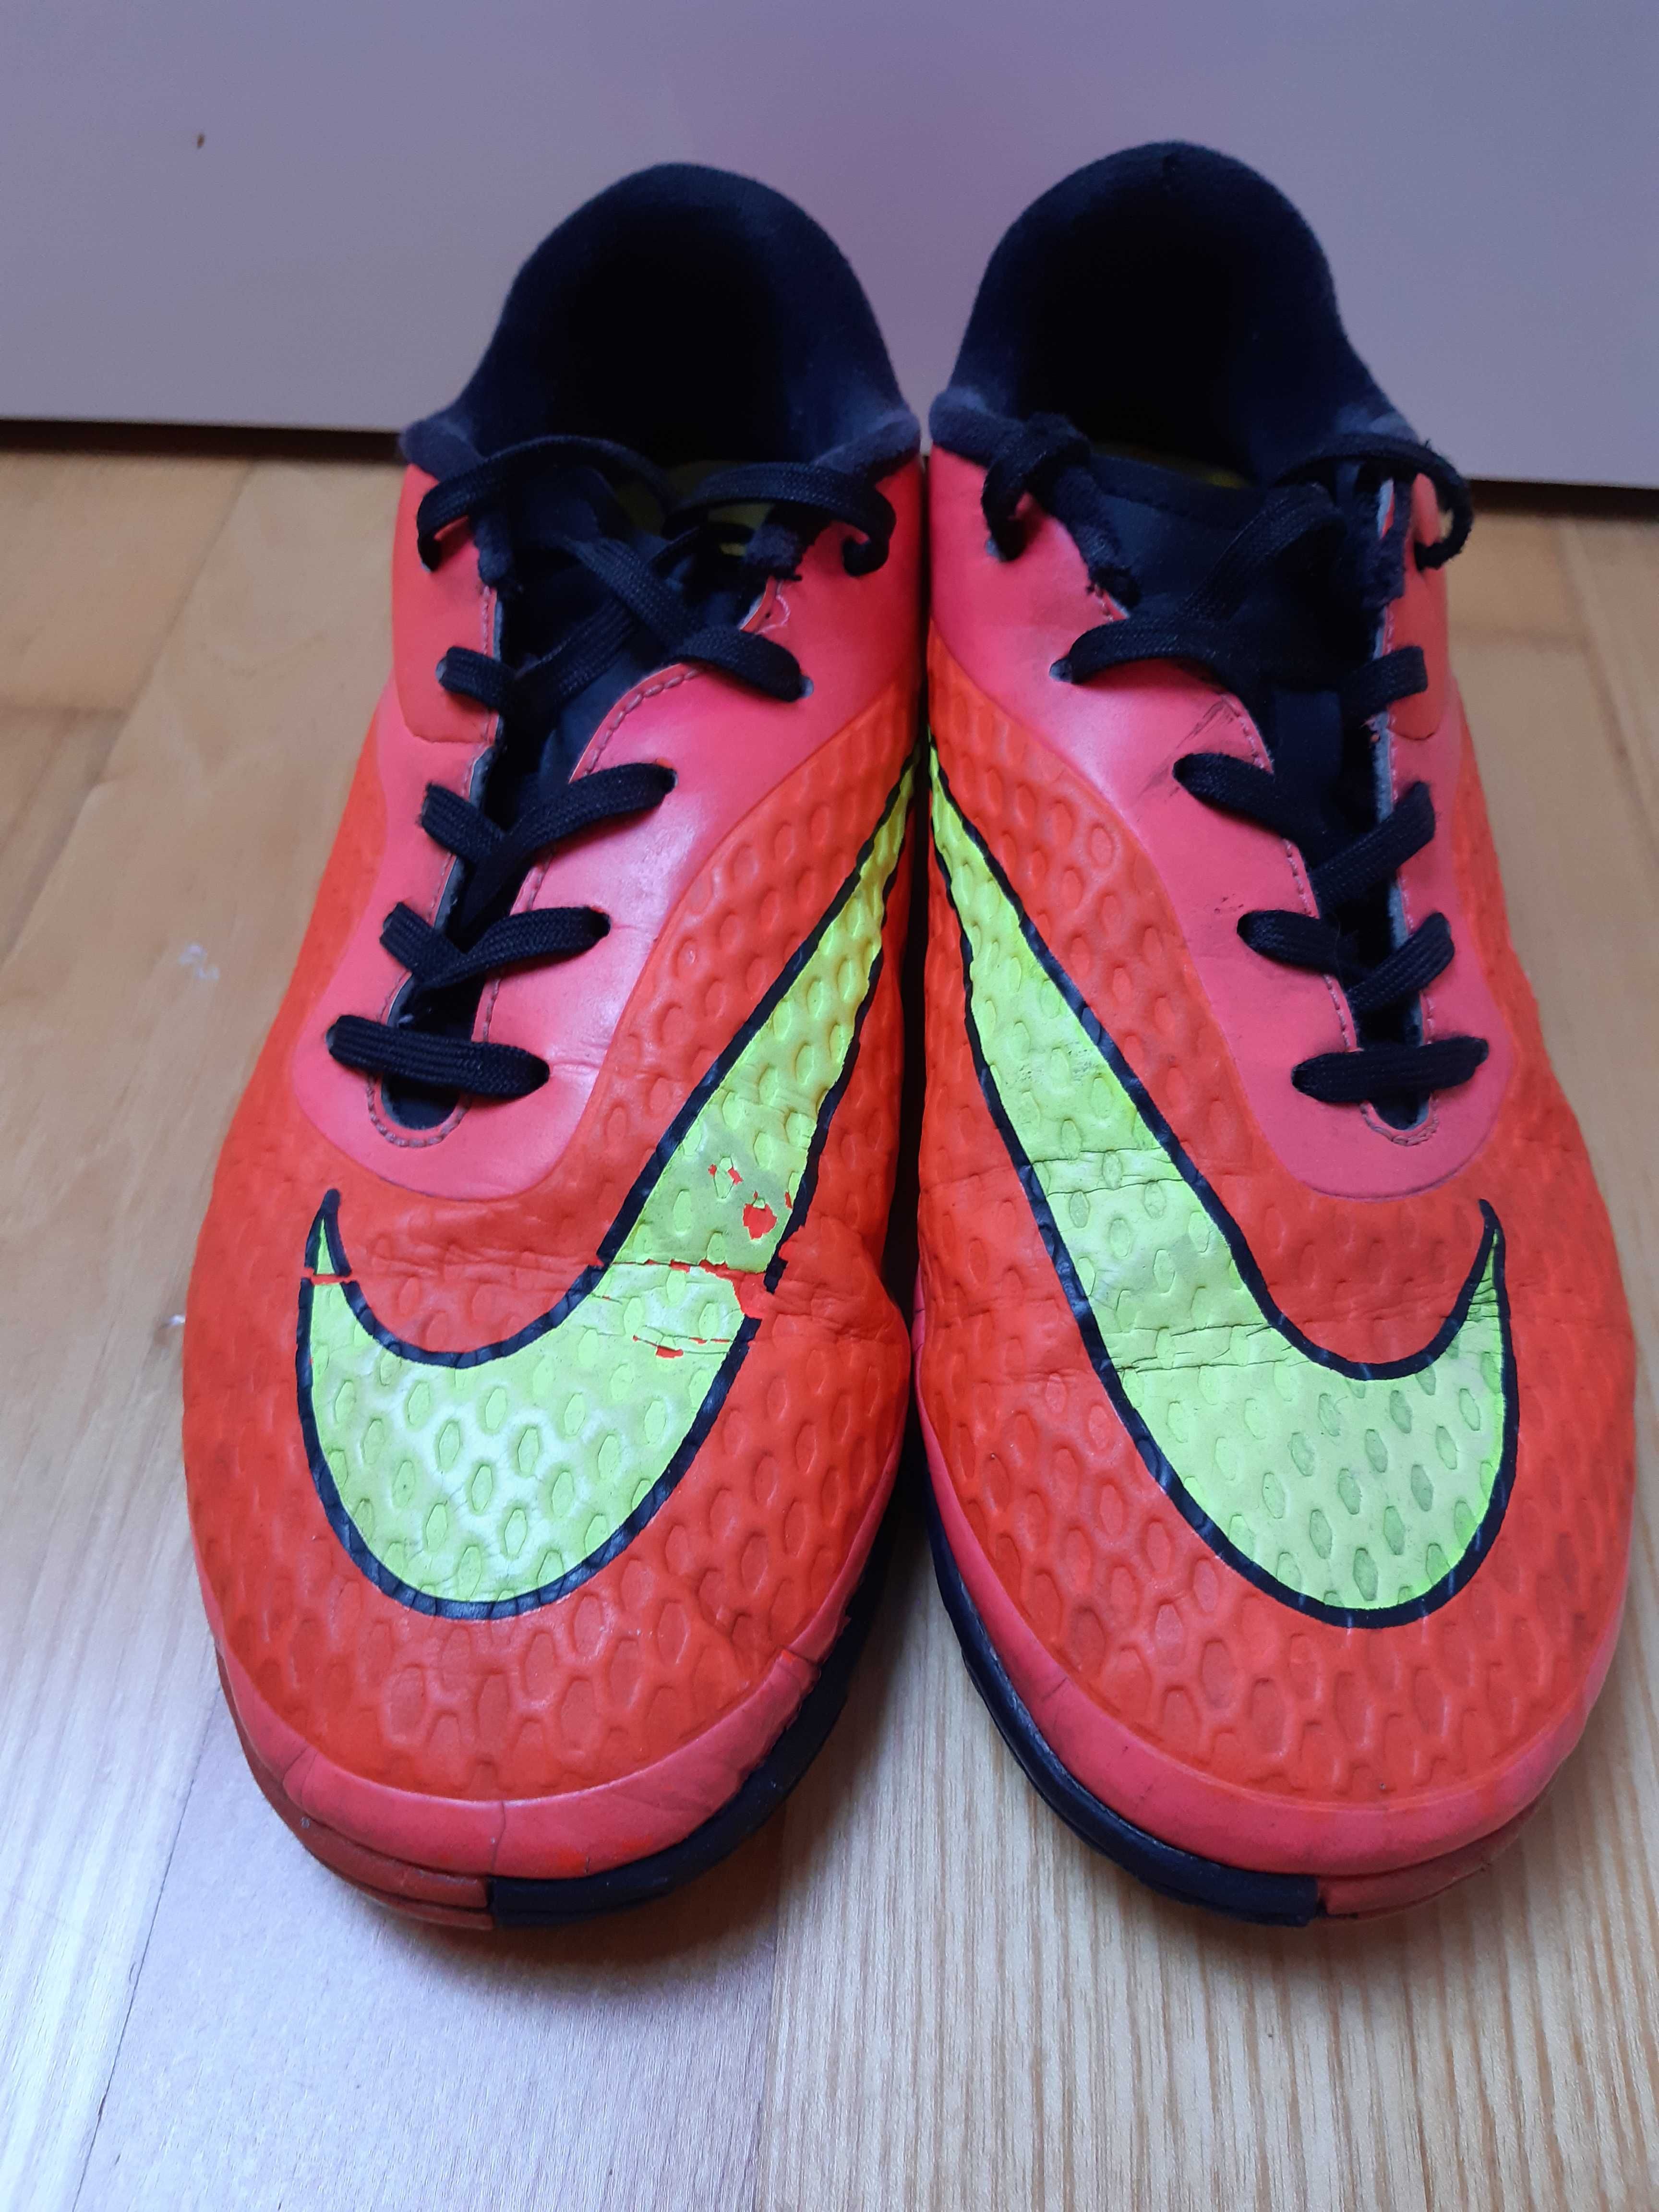 Buty piłkarskie Nike Hypervenom żwirówki r. 38,5 24cm